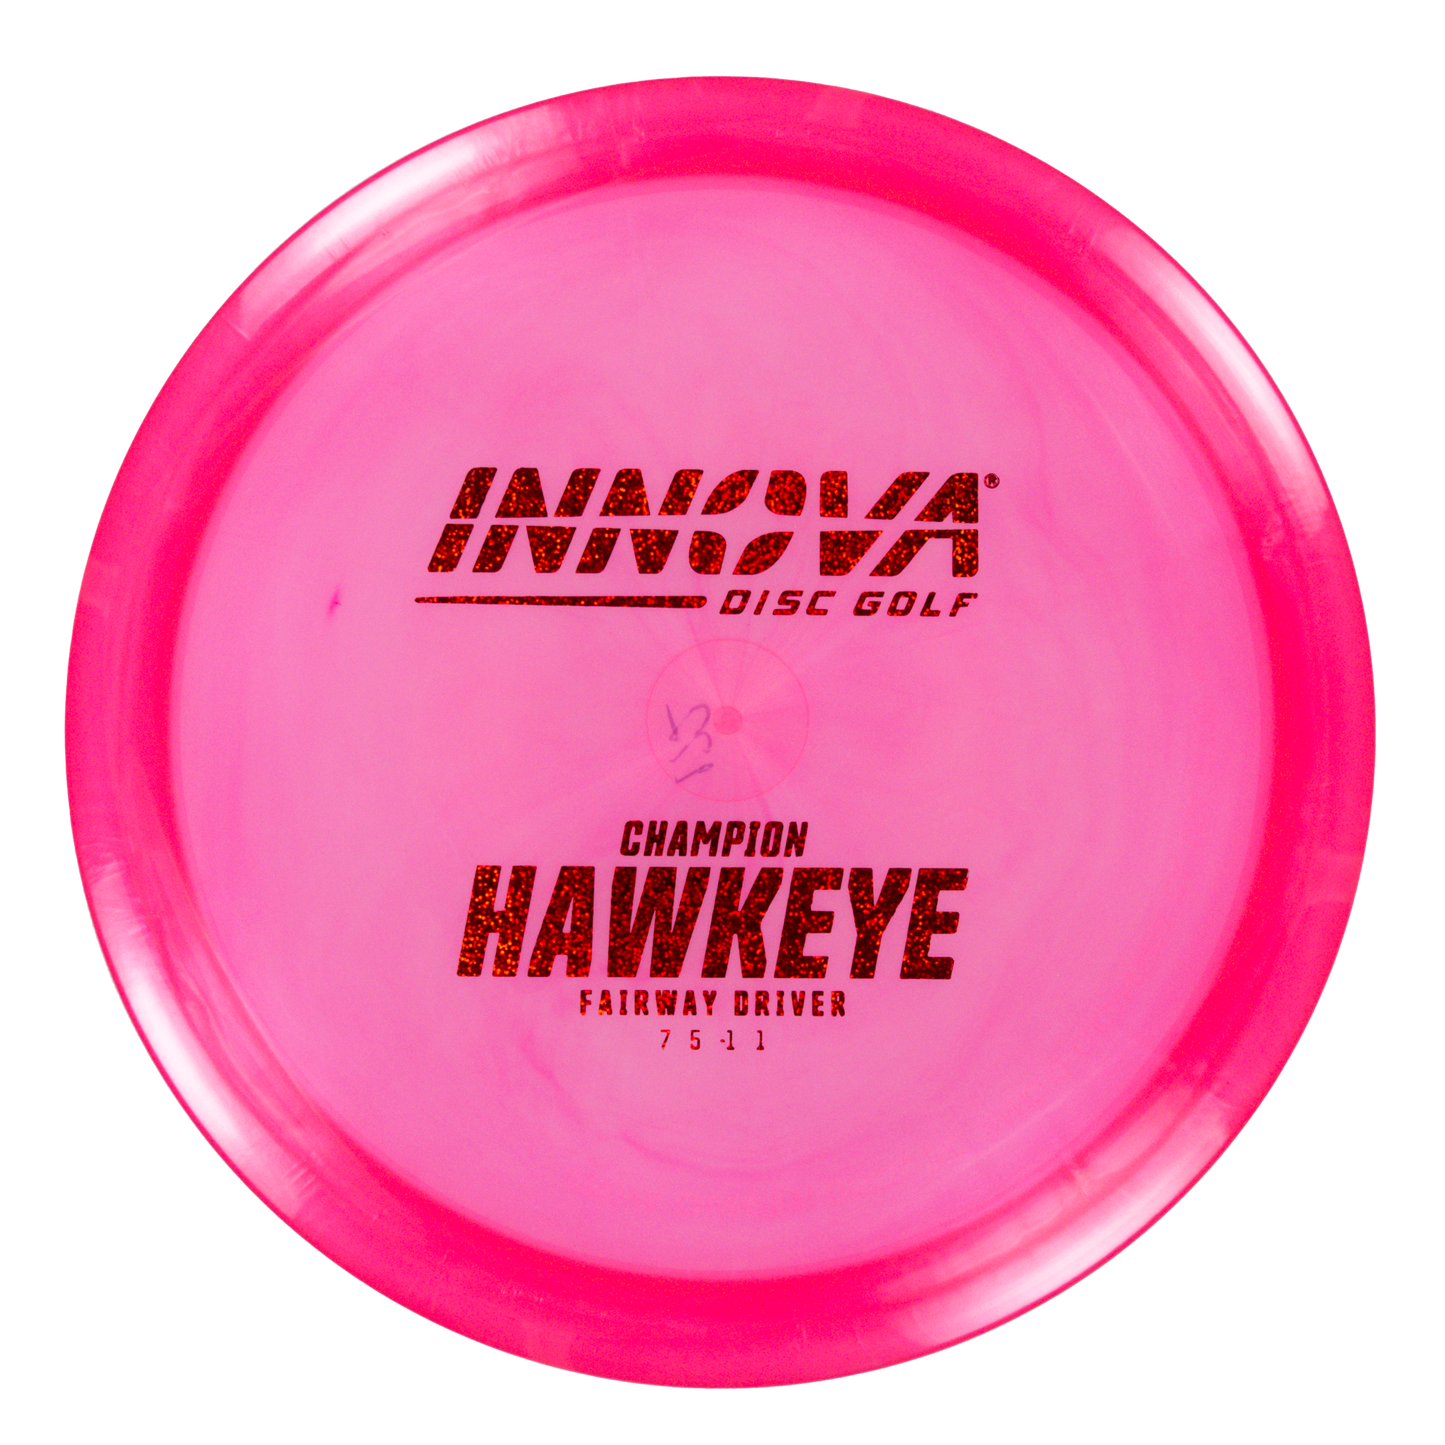 Innova Champion Hawkeye Golf Disc